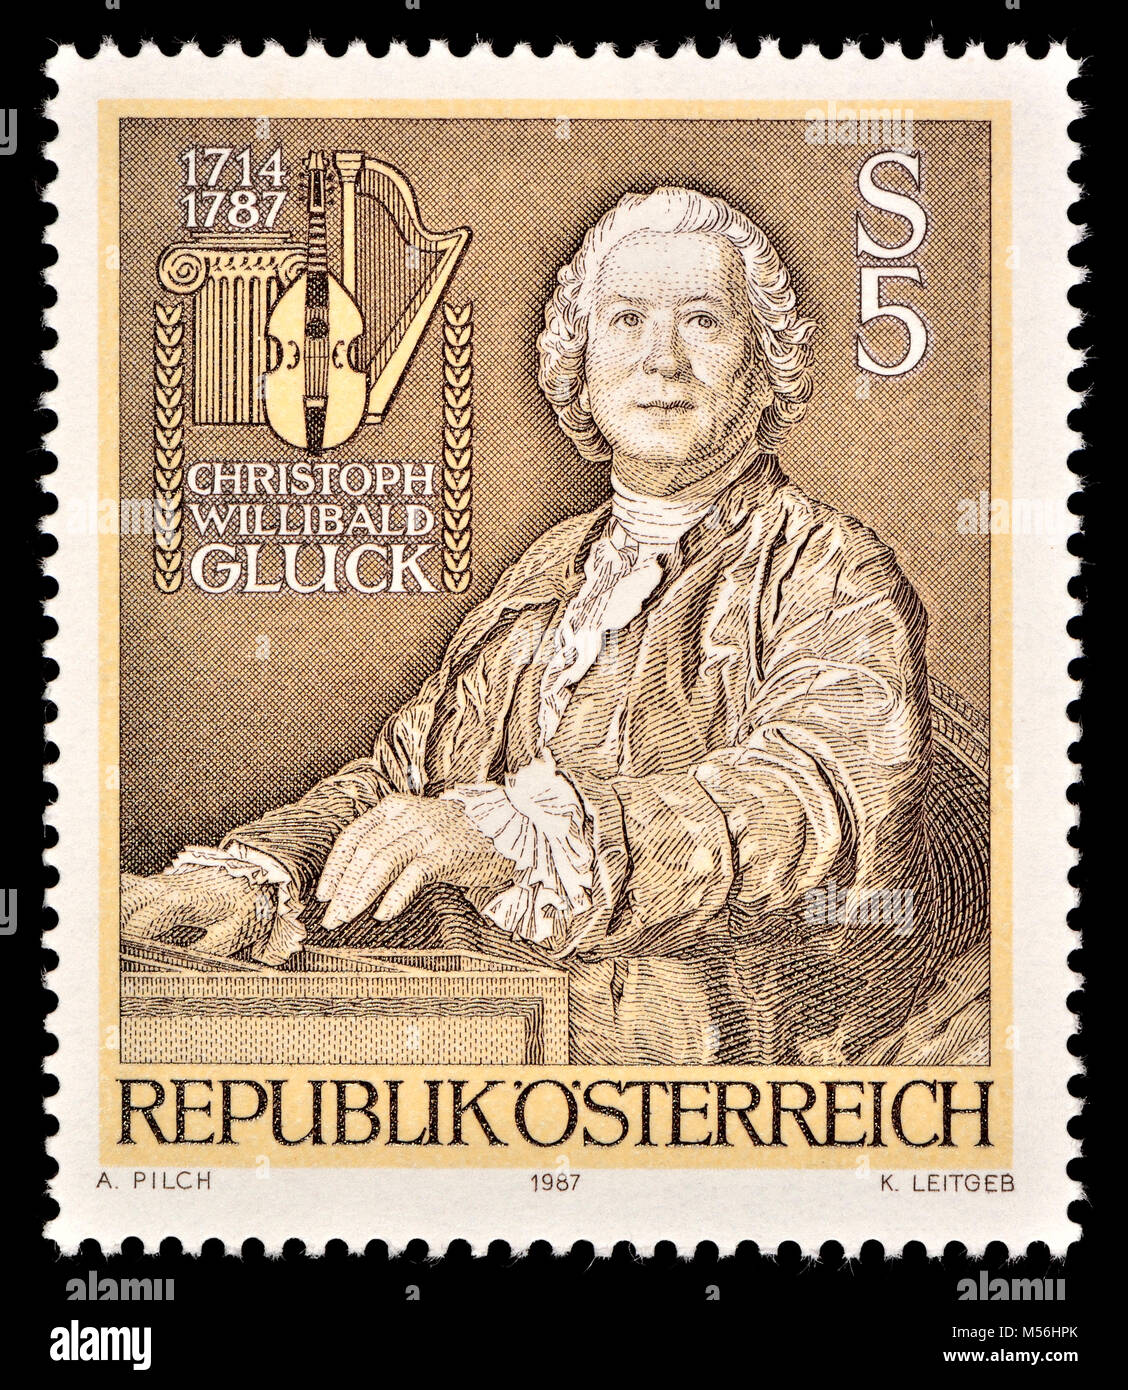 Timbre autrichien (1987) : Christoph Willibald Gluck (1714 - 1787) compositeur d'opéra français et italien au début de l'époque classique. (À partir d'un 17 Banque D'Images